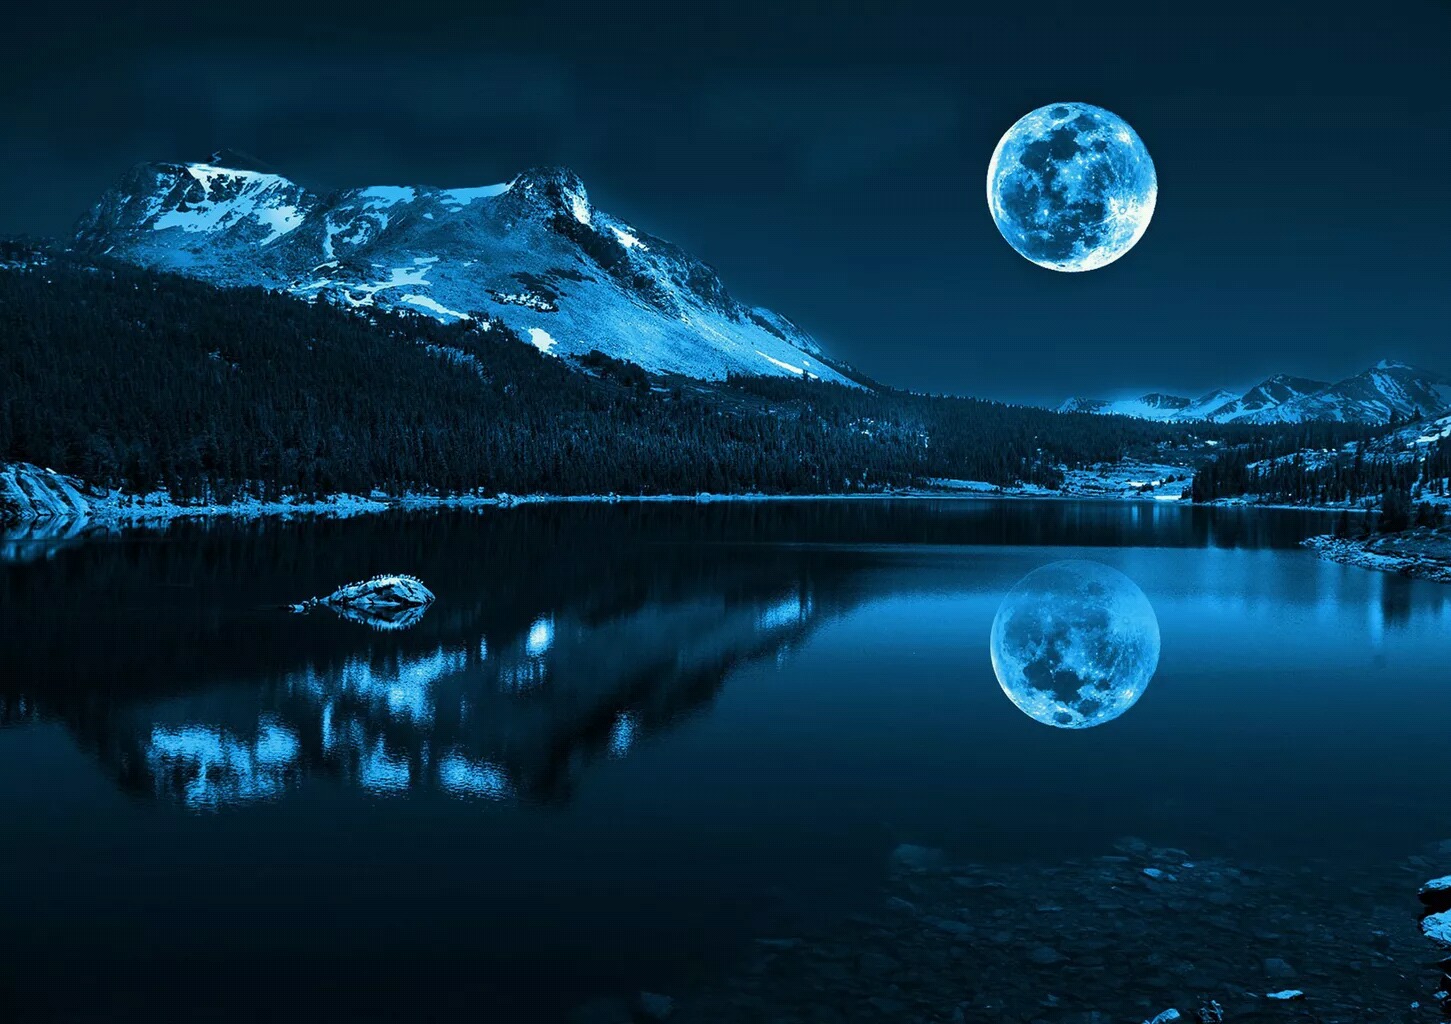 明亮的月亮倒映在平静的水面上